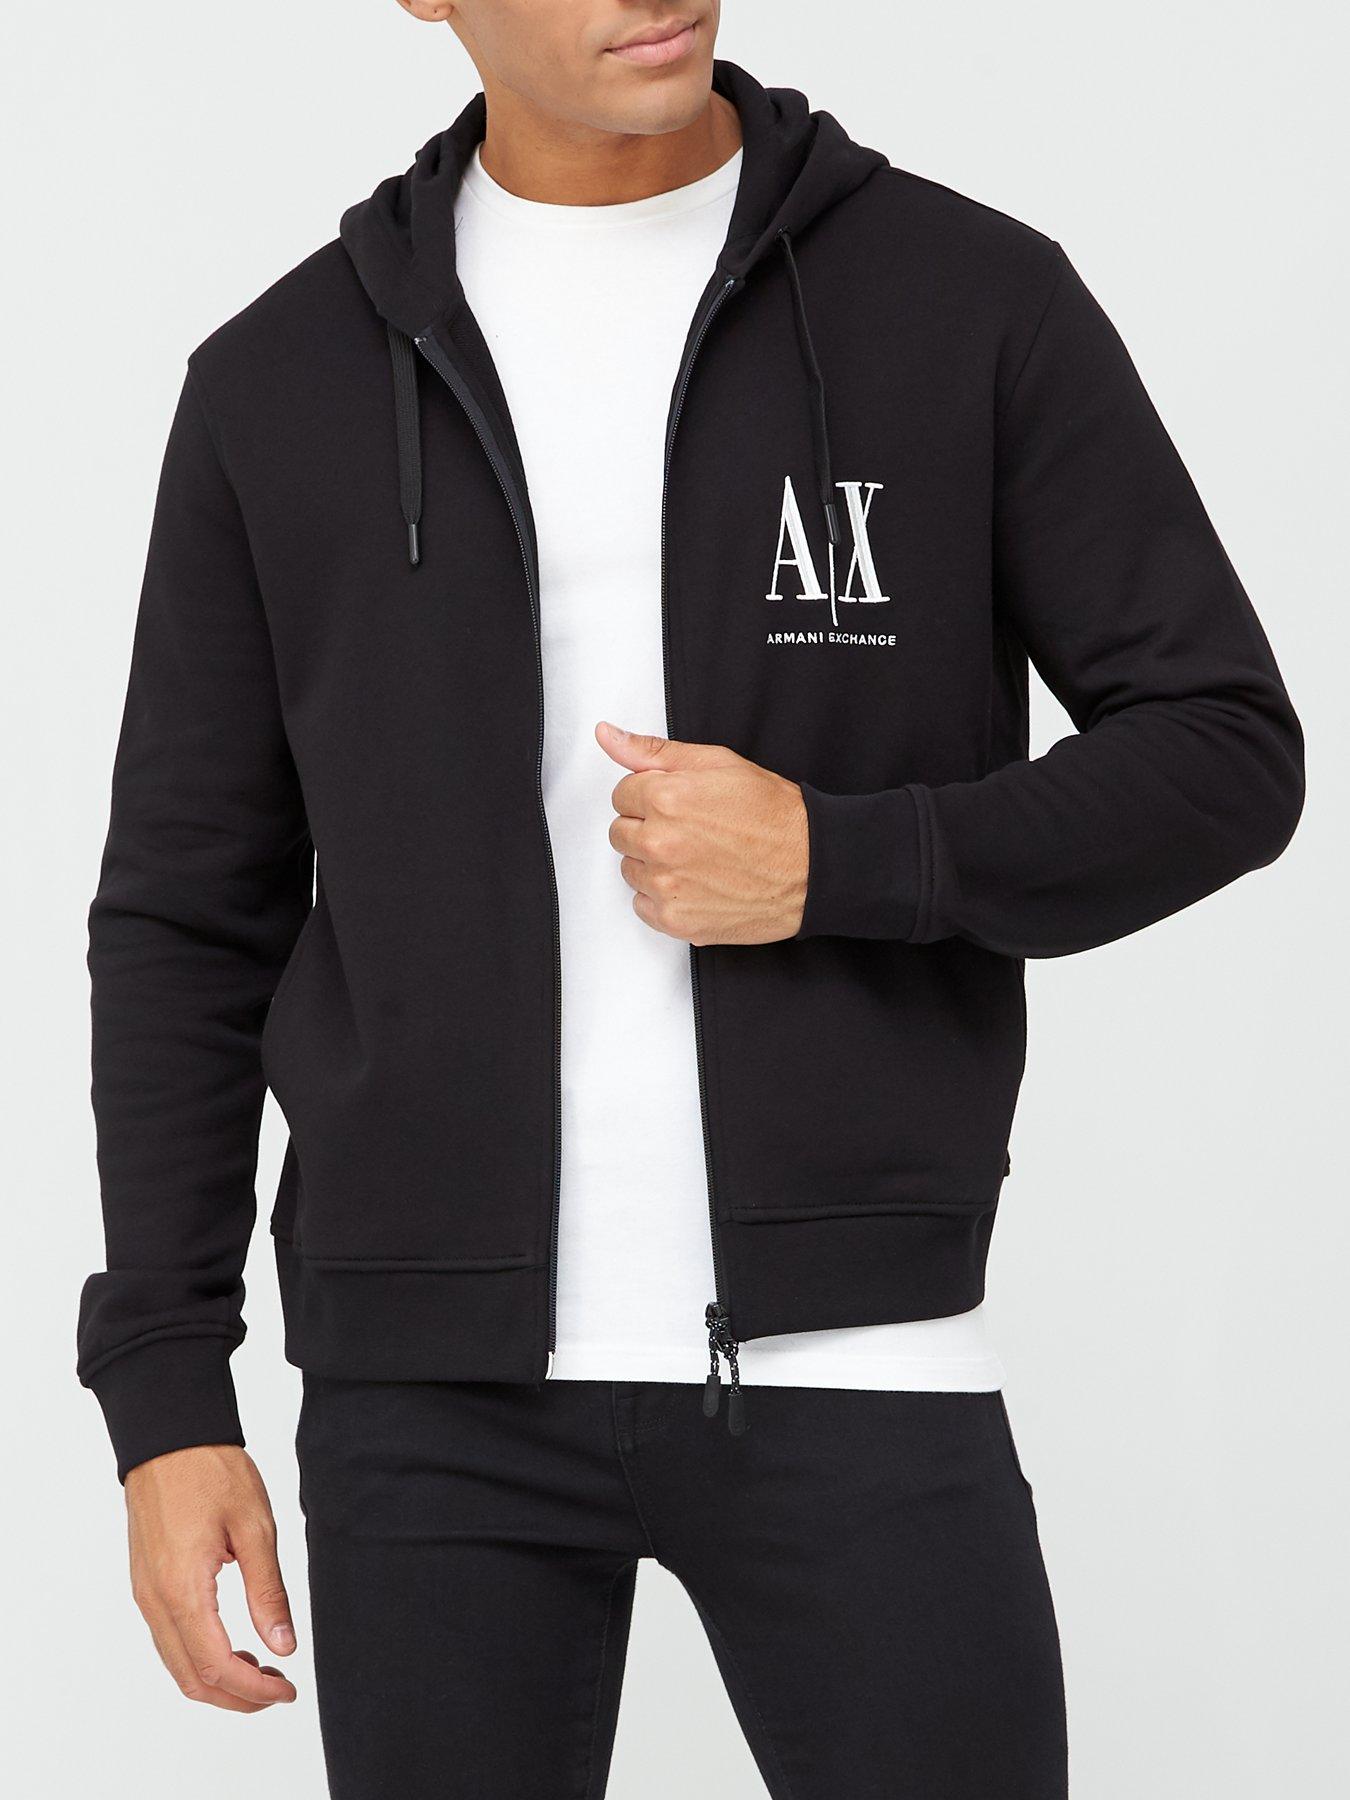 armani exchange hoodie black